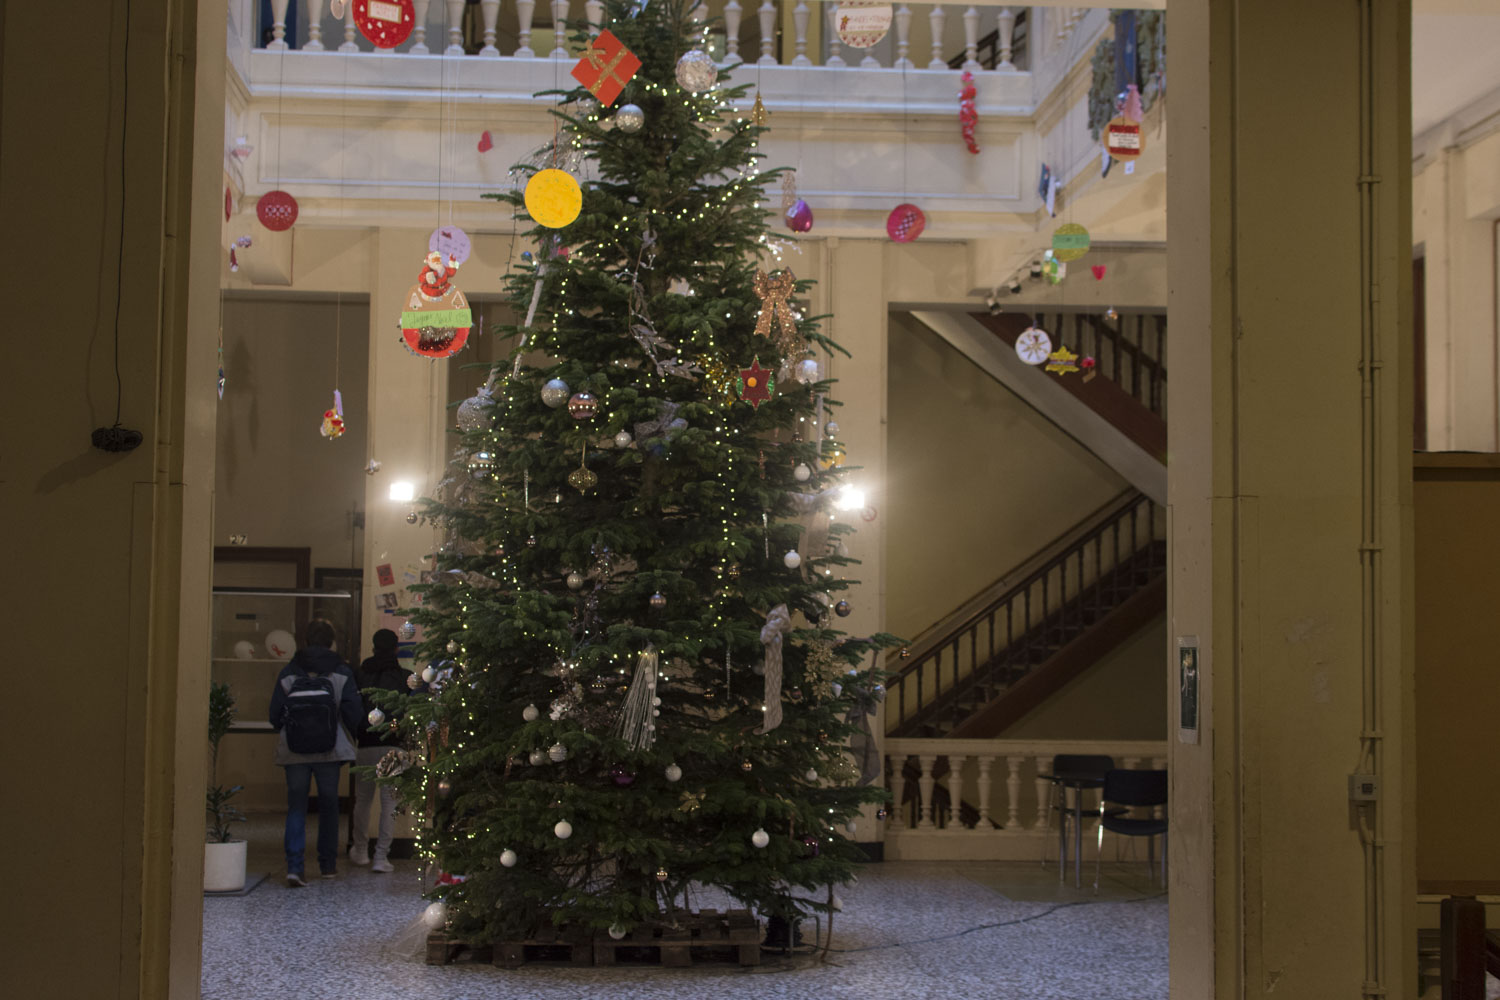 Dans le hall d’entrée, le sapin de Noël vit ses derniers moments de grâce avant d’être retiré